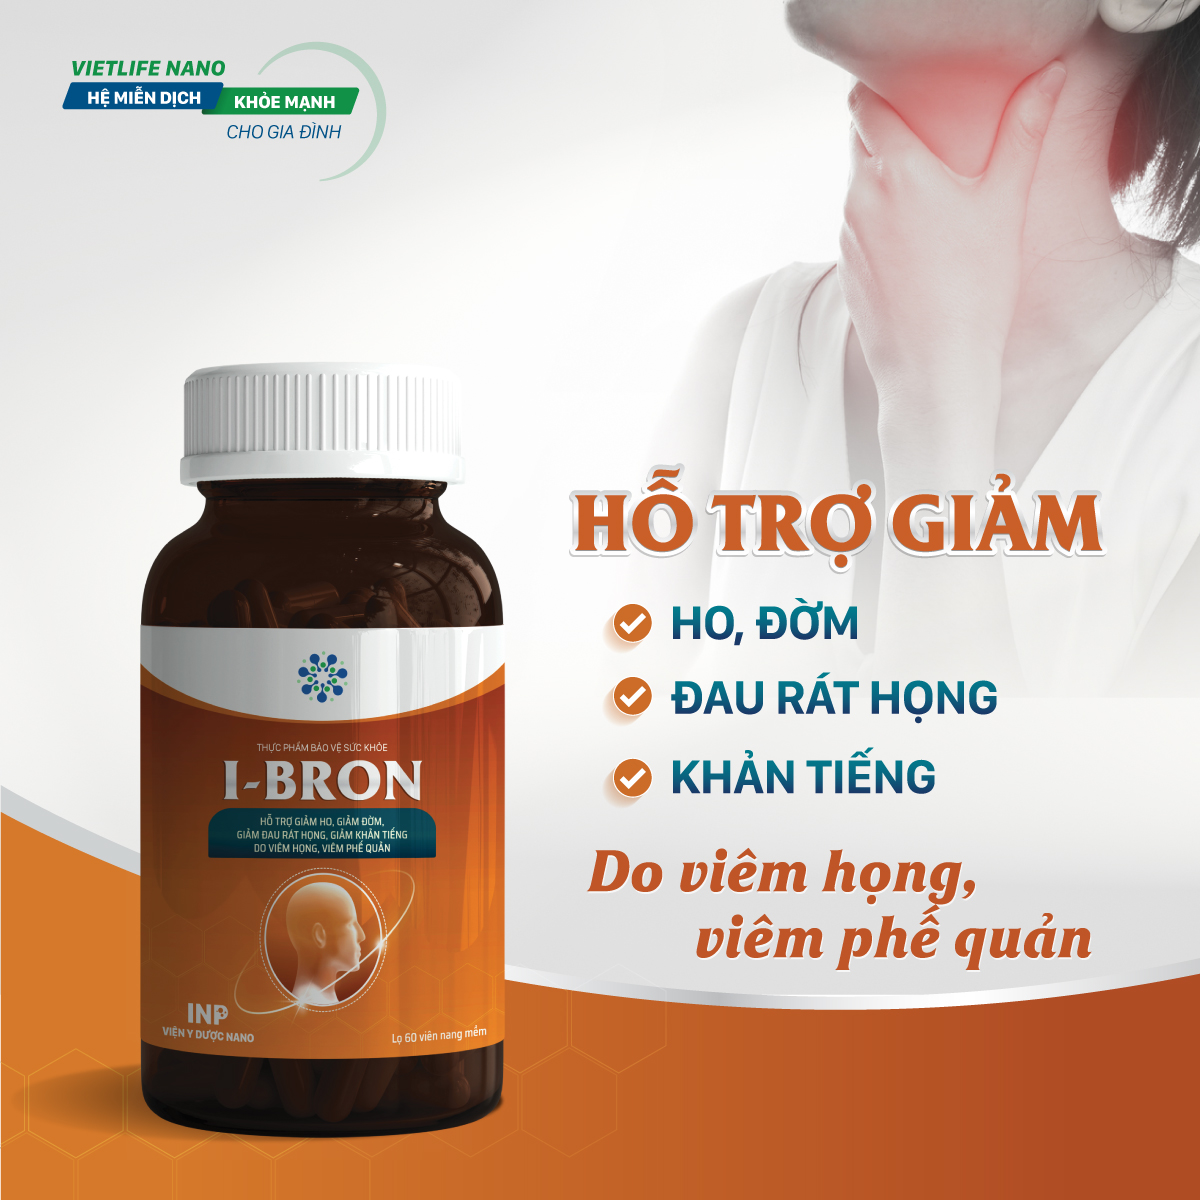 Sản phẩm I-BRON dành riêng cho người có bệnh lý nền 1